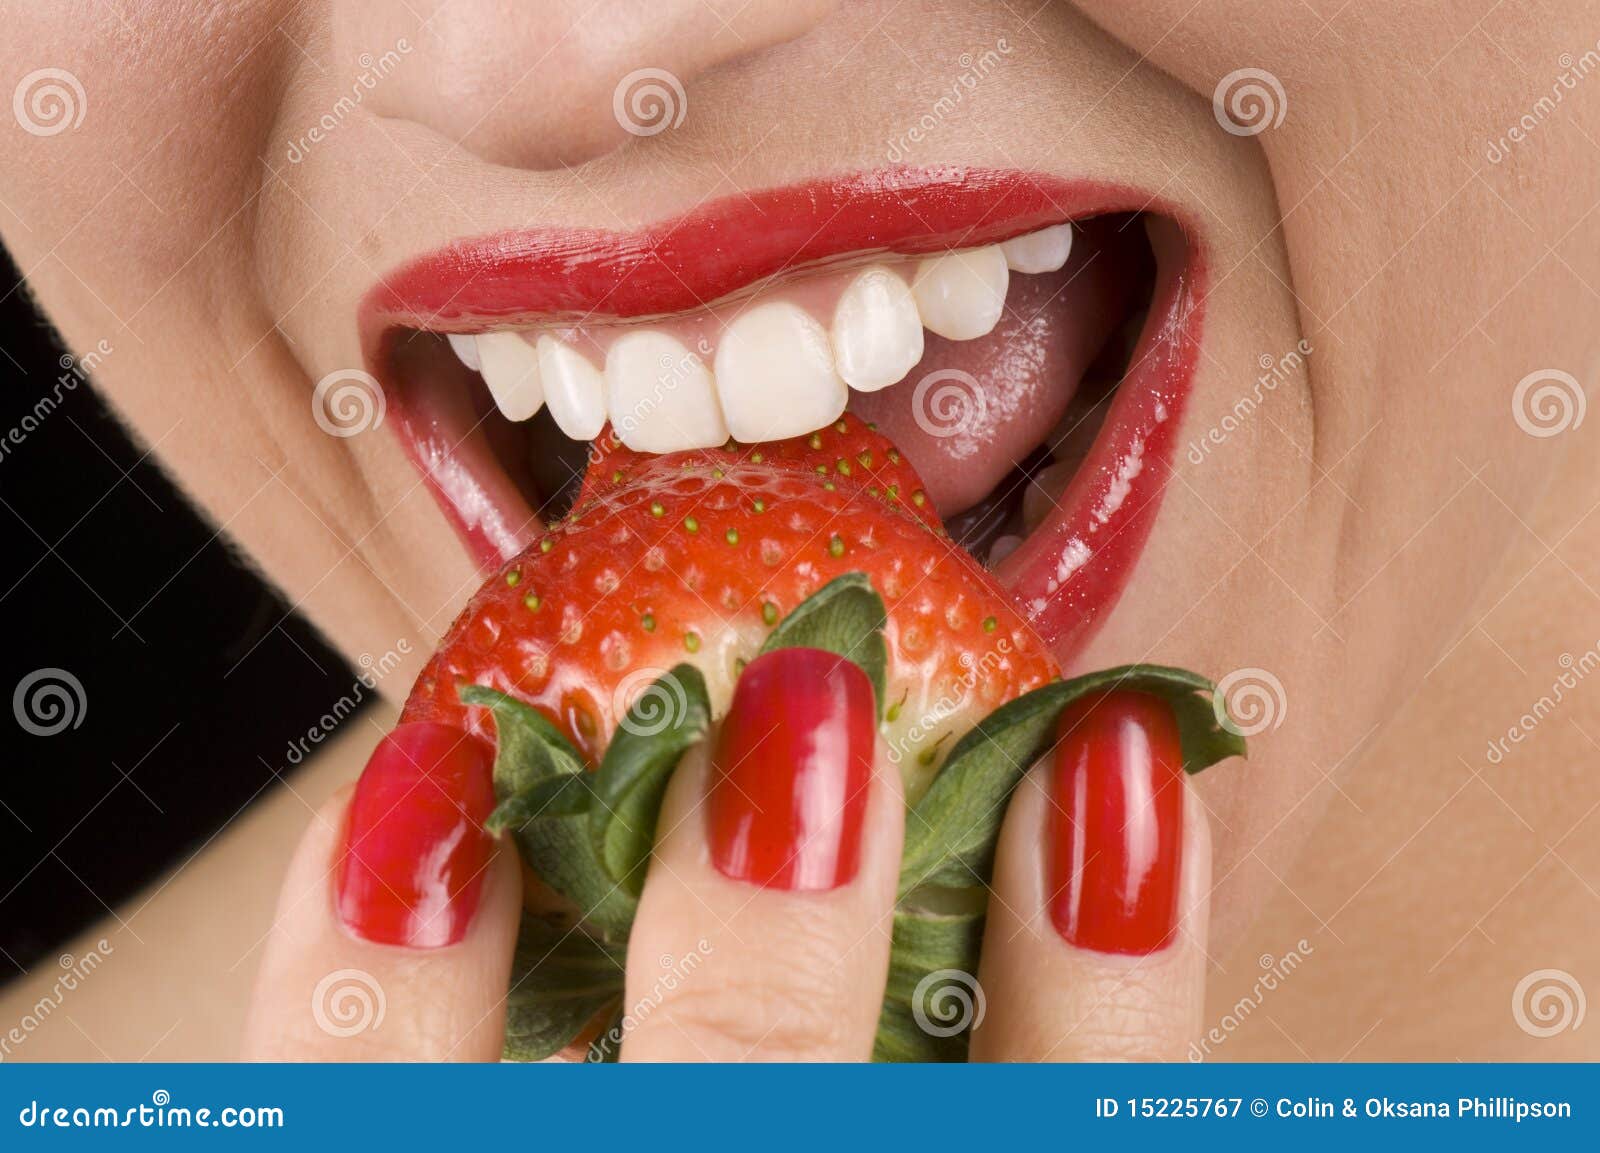 Sensuele Lippen En Rode Aardbei Stock Afbeelding Image Of Kaukasisch Liefde 15225767